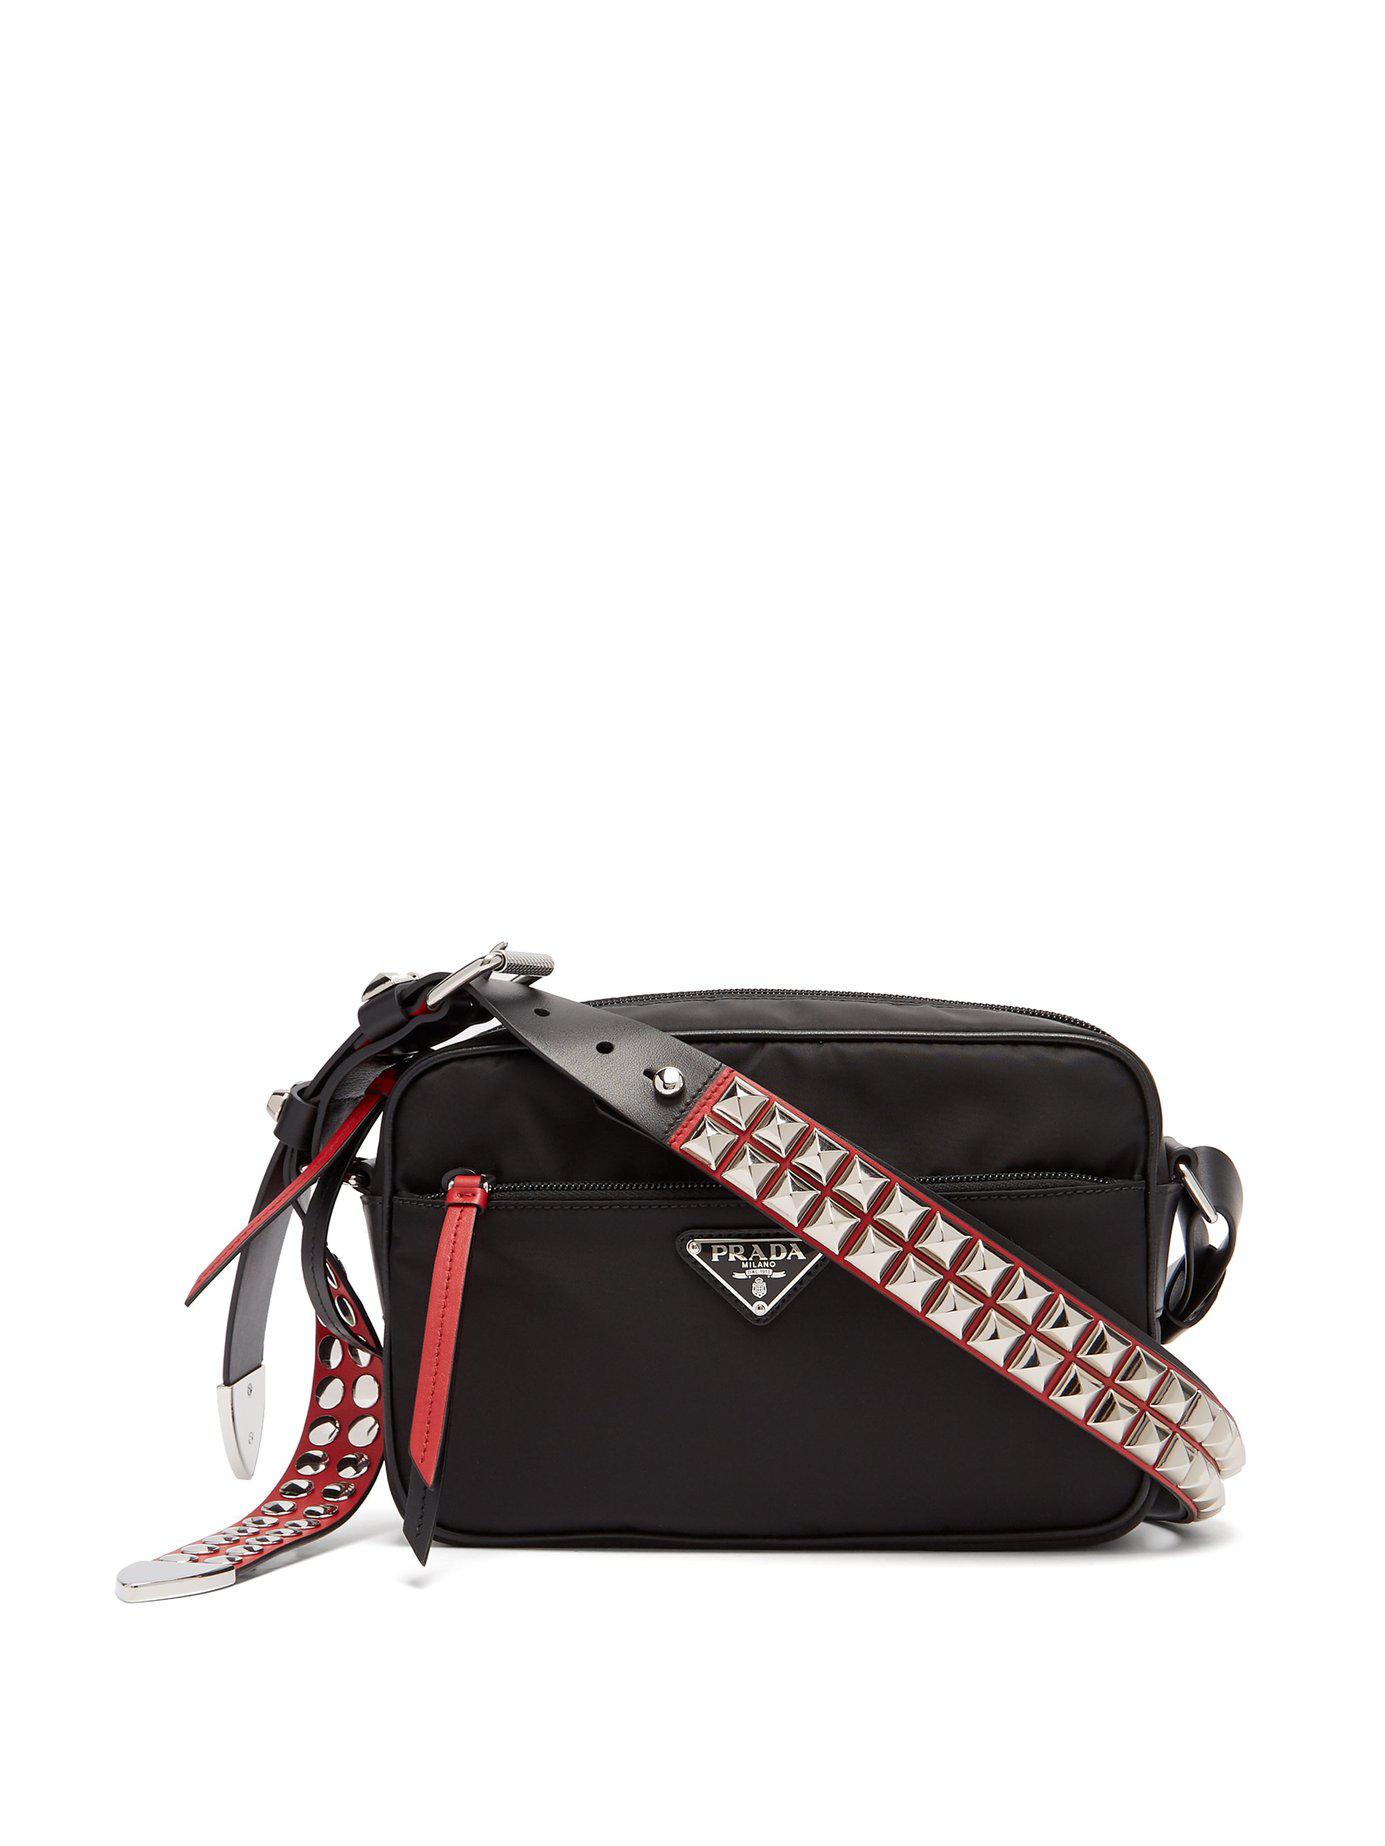 Prada New Vela Studded Nylon Shoulder Bag in Black | Lyst